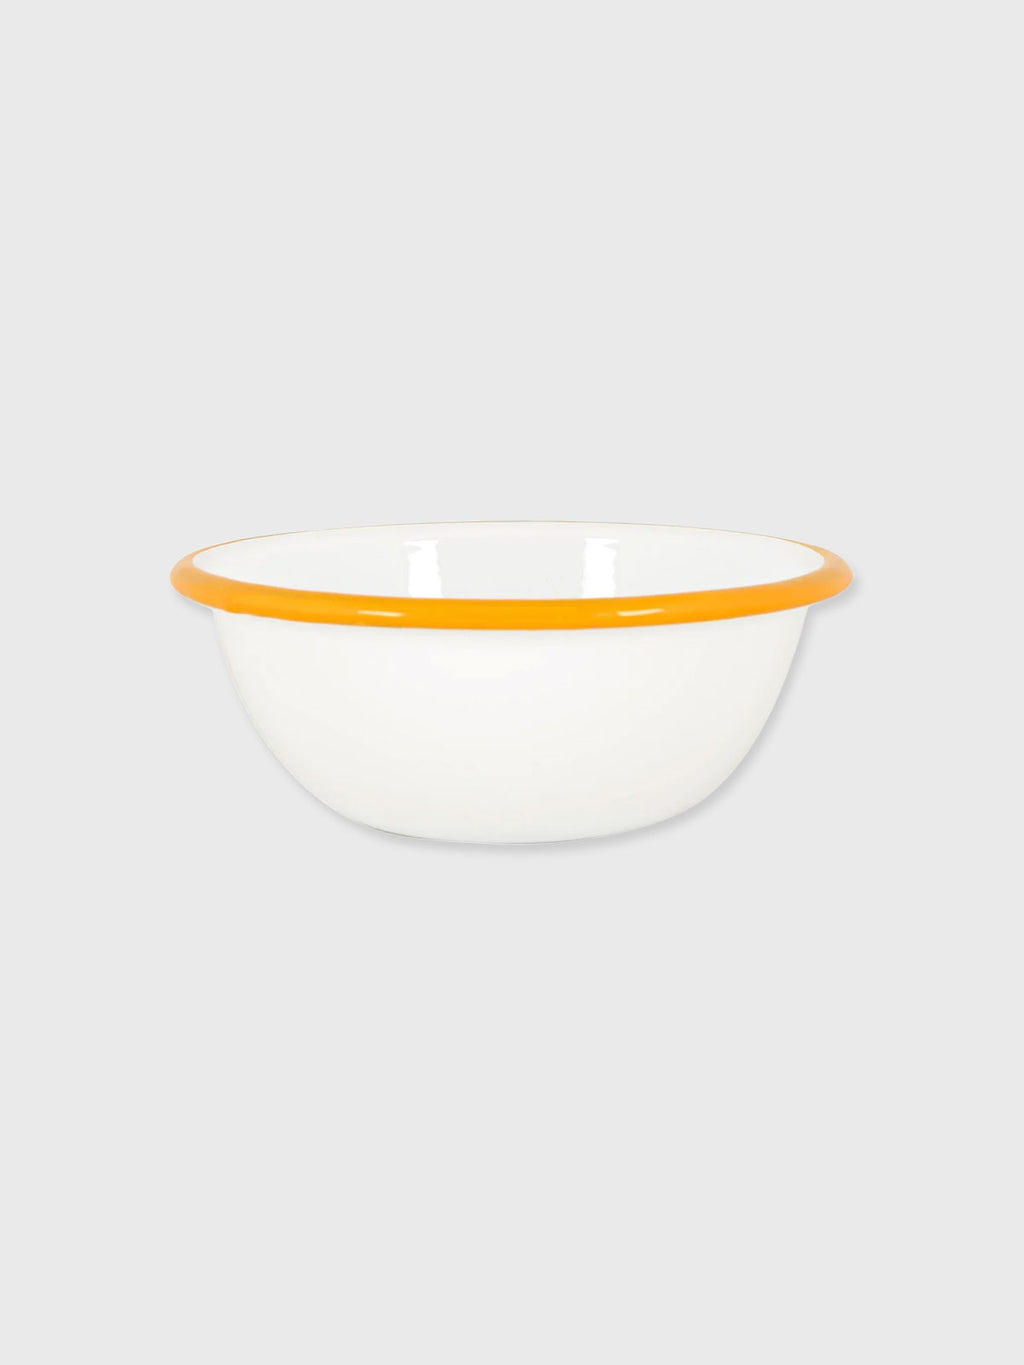 Enamel Bowl White / Yellow Rim - 16cm